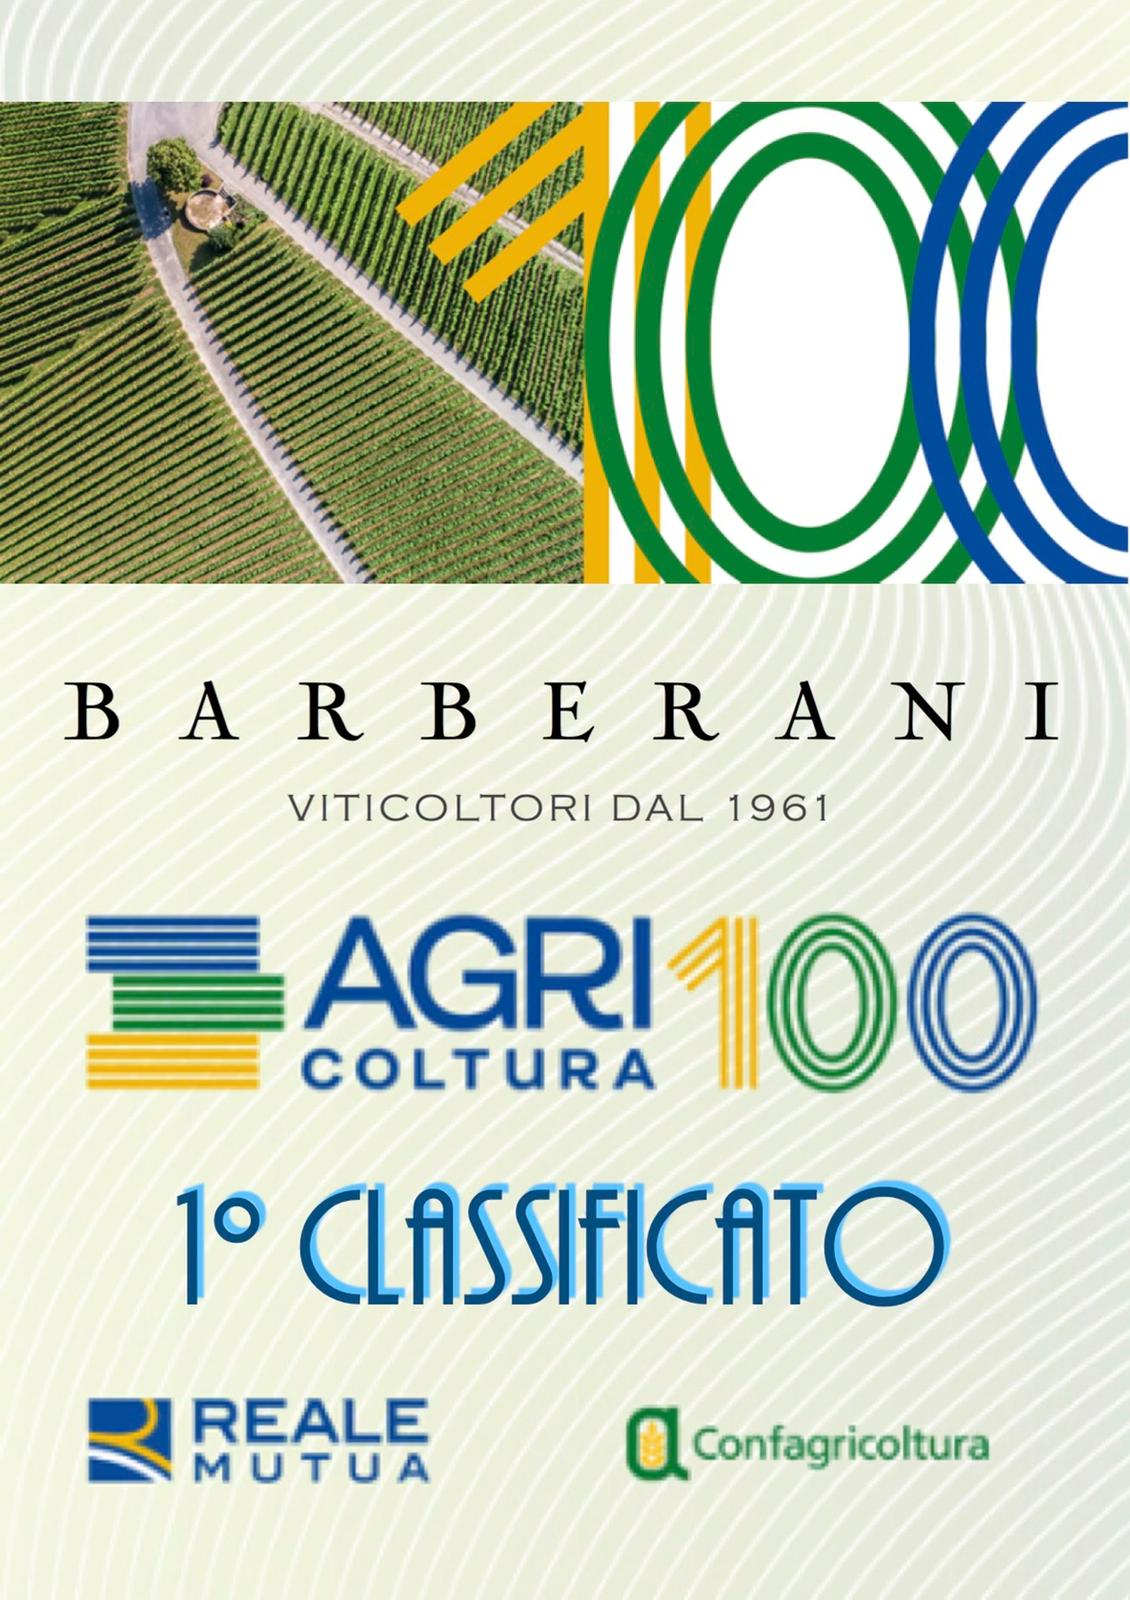 AGRIcoltura100 Baeberani